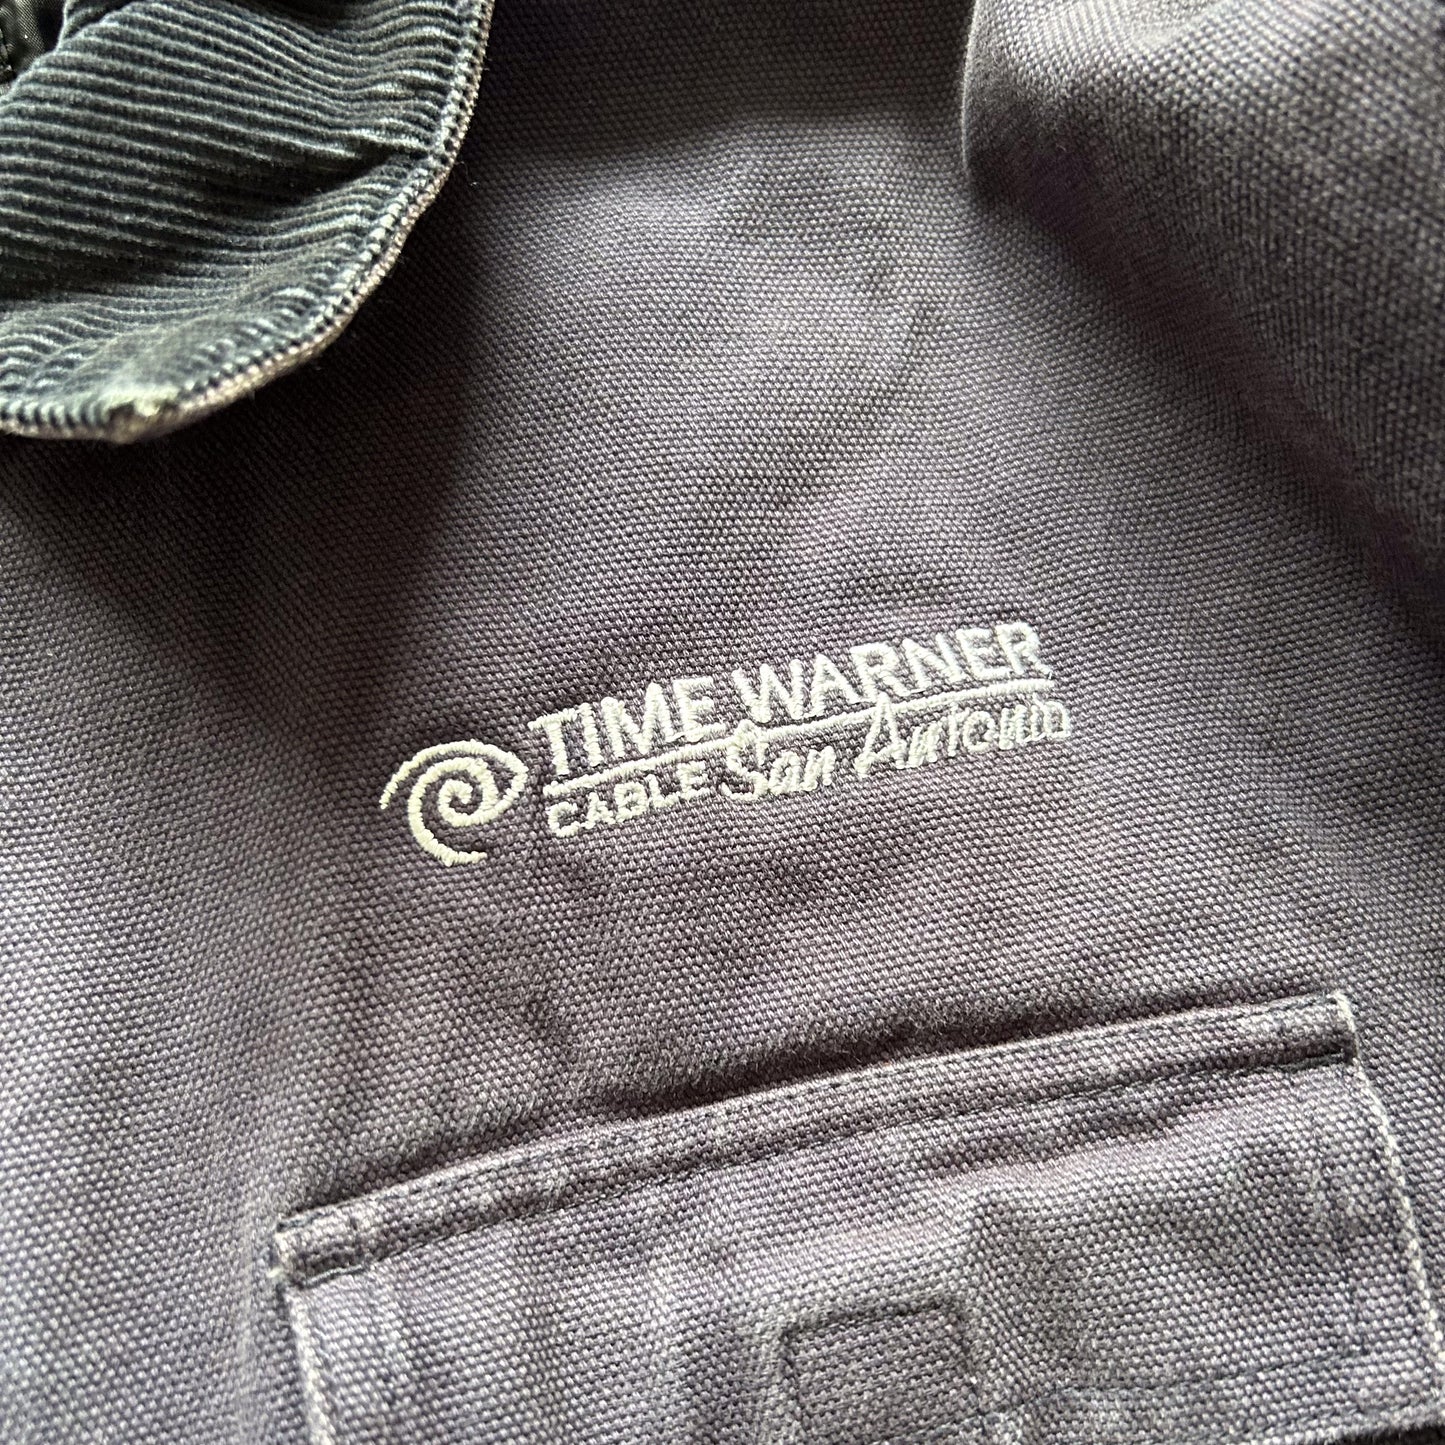 1990s - vintage 'time warner' work-wear jacket